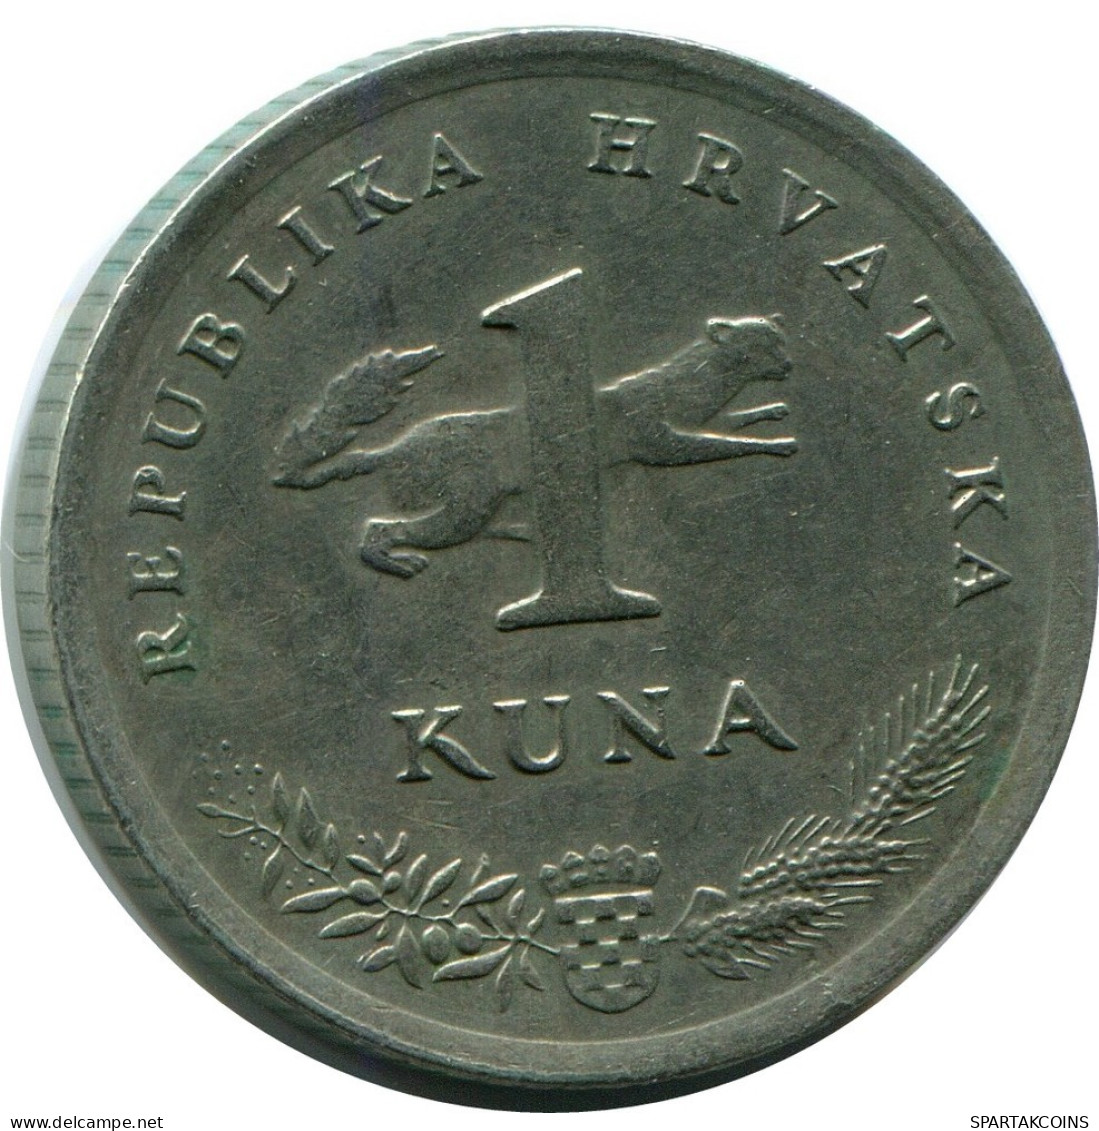 1 KUNA 1993 KROATIEN CROATIA Münze #AR929.D.A - Croacia